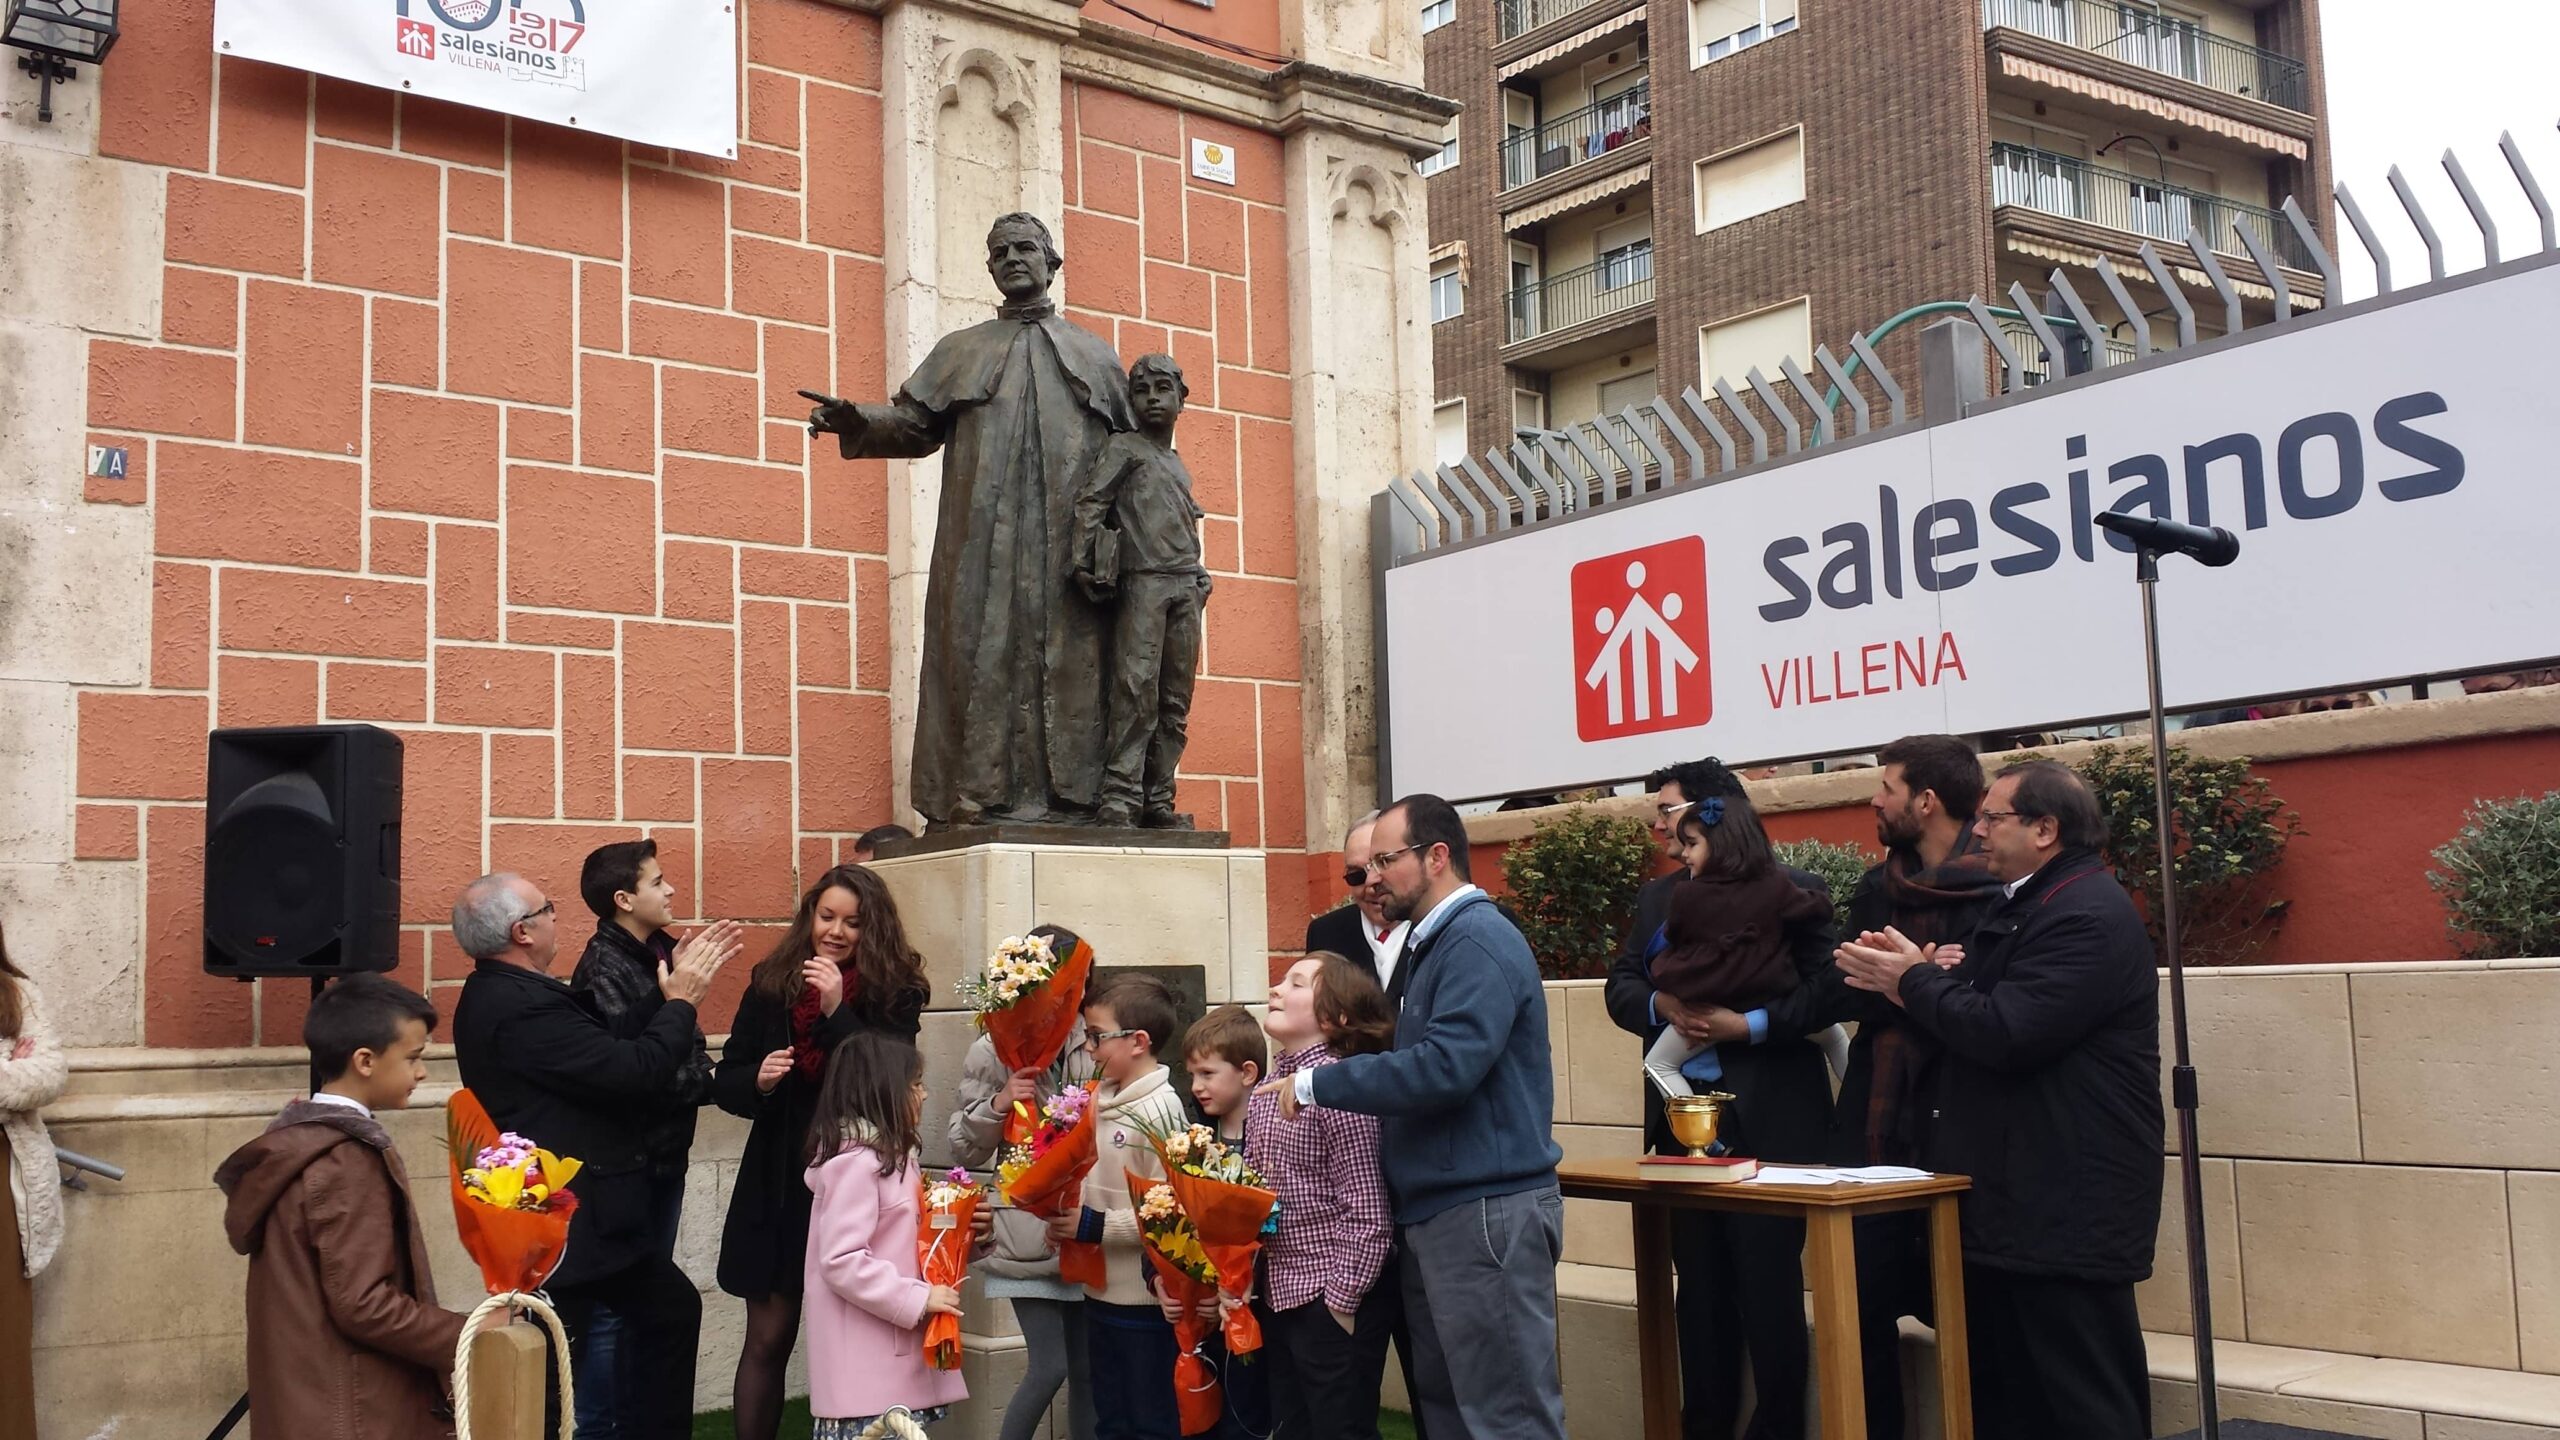 El  domingo 19 de Noviembre  la Casa Salesiana de Villena cumple 100 años